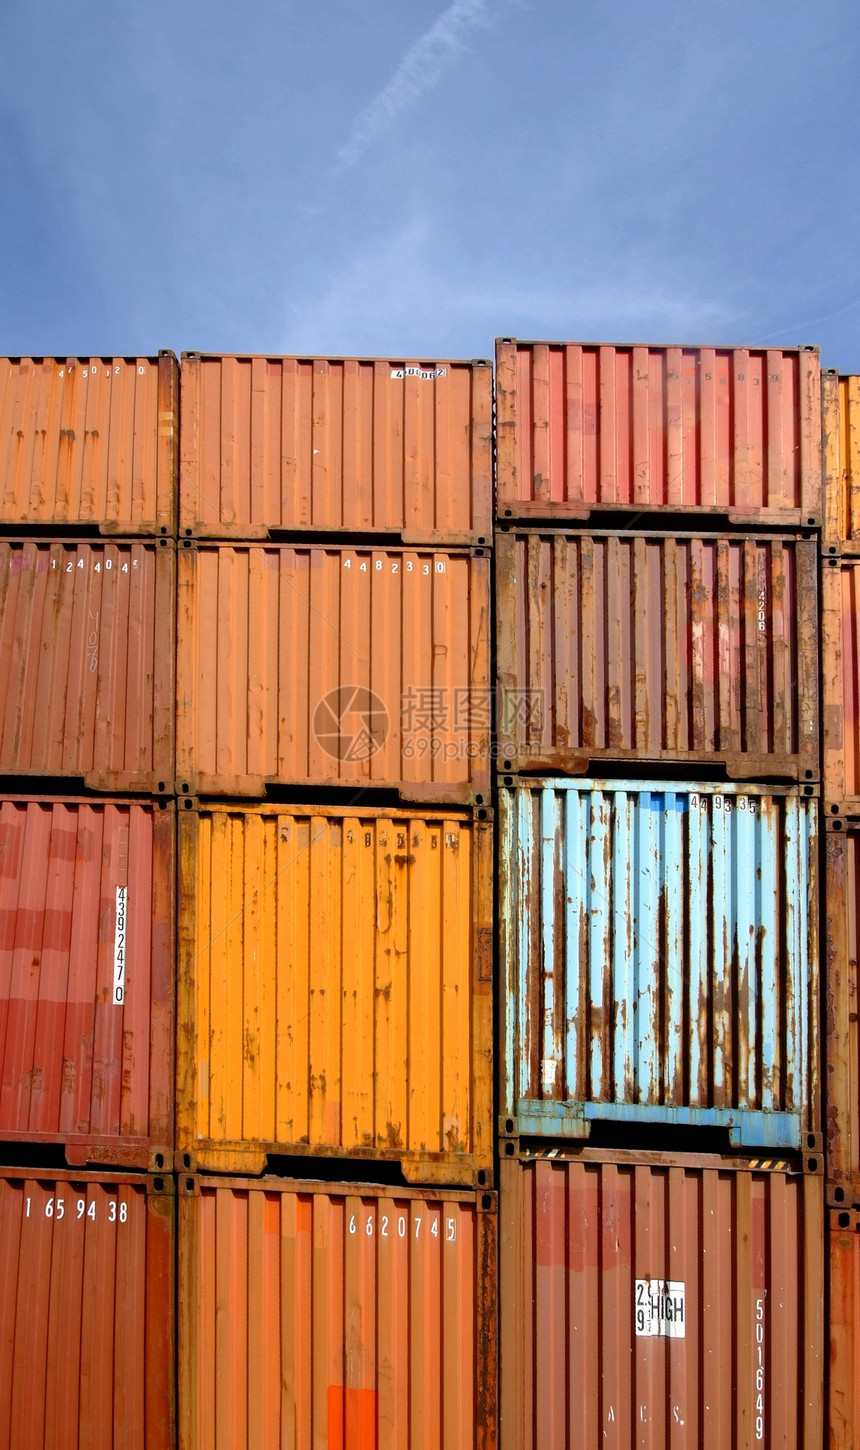 容器交通后勤船运运输货运商业货轮线条海关图片